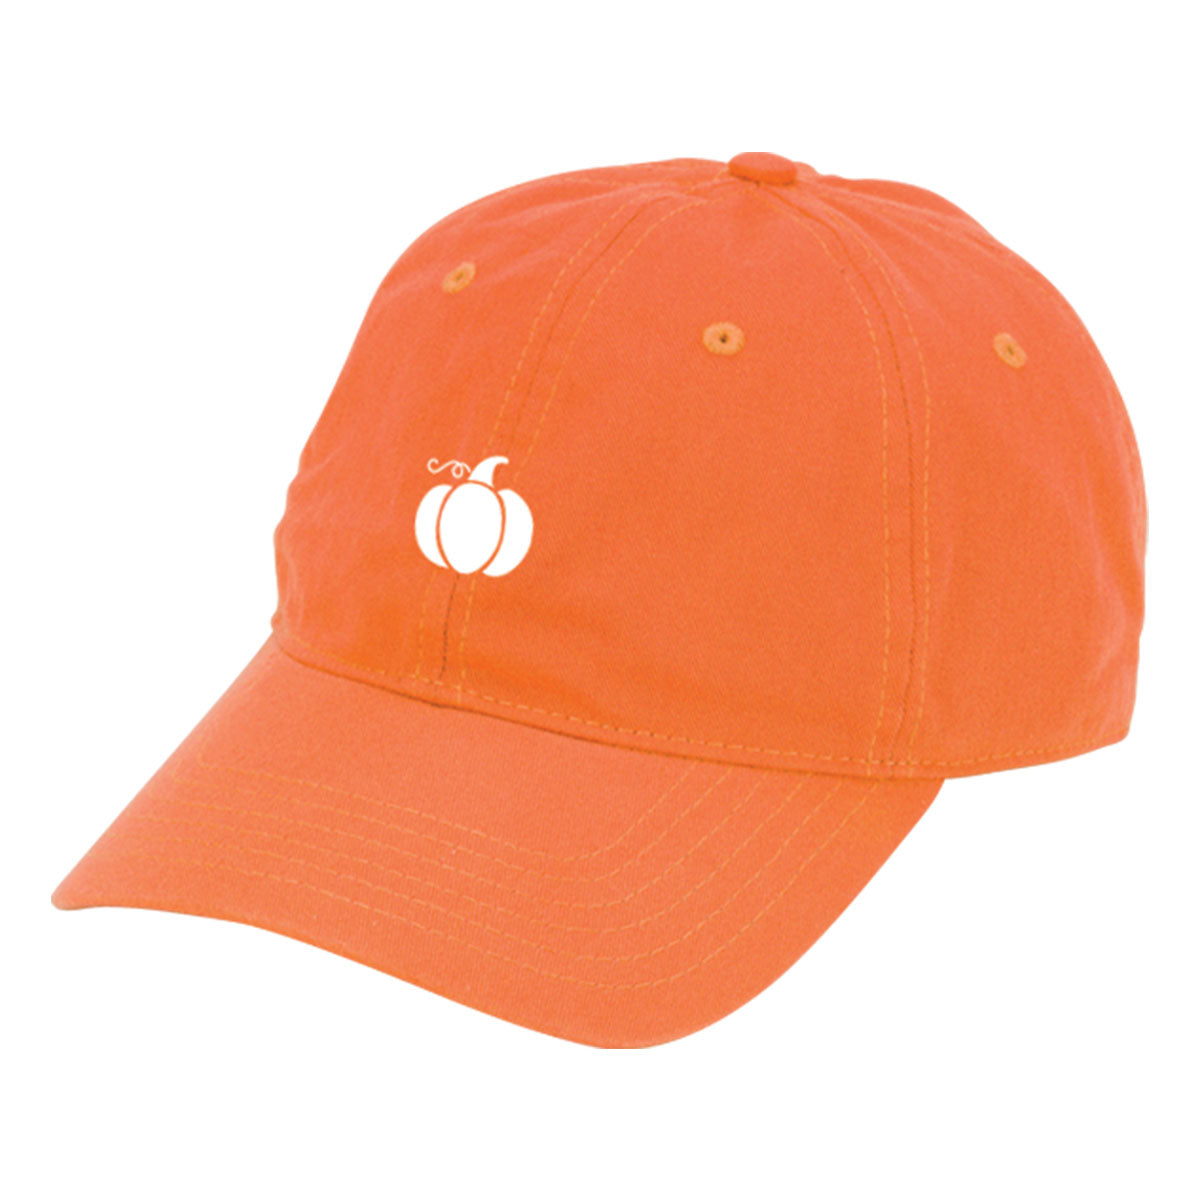 Pumpkin Orange Cap